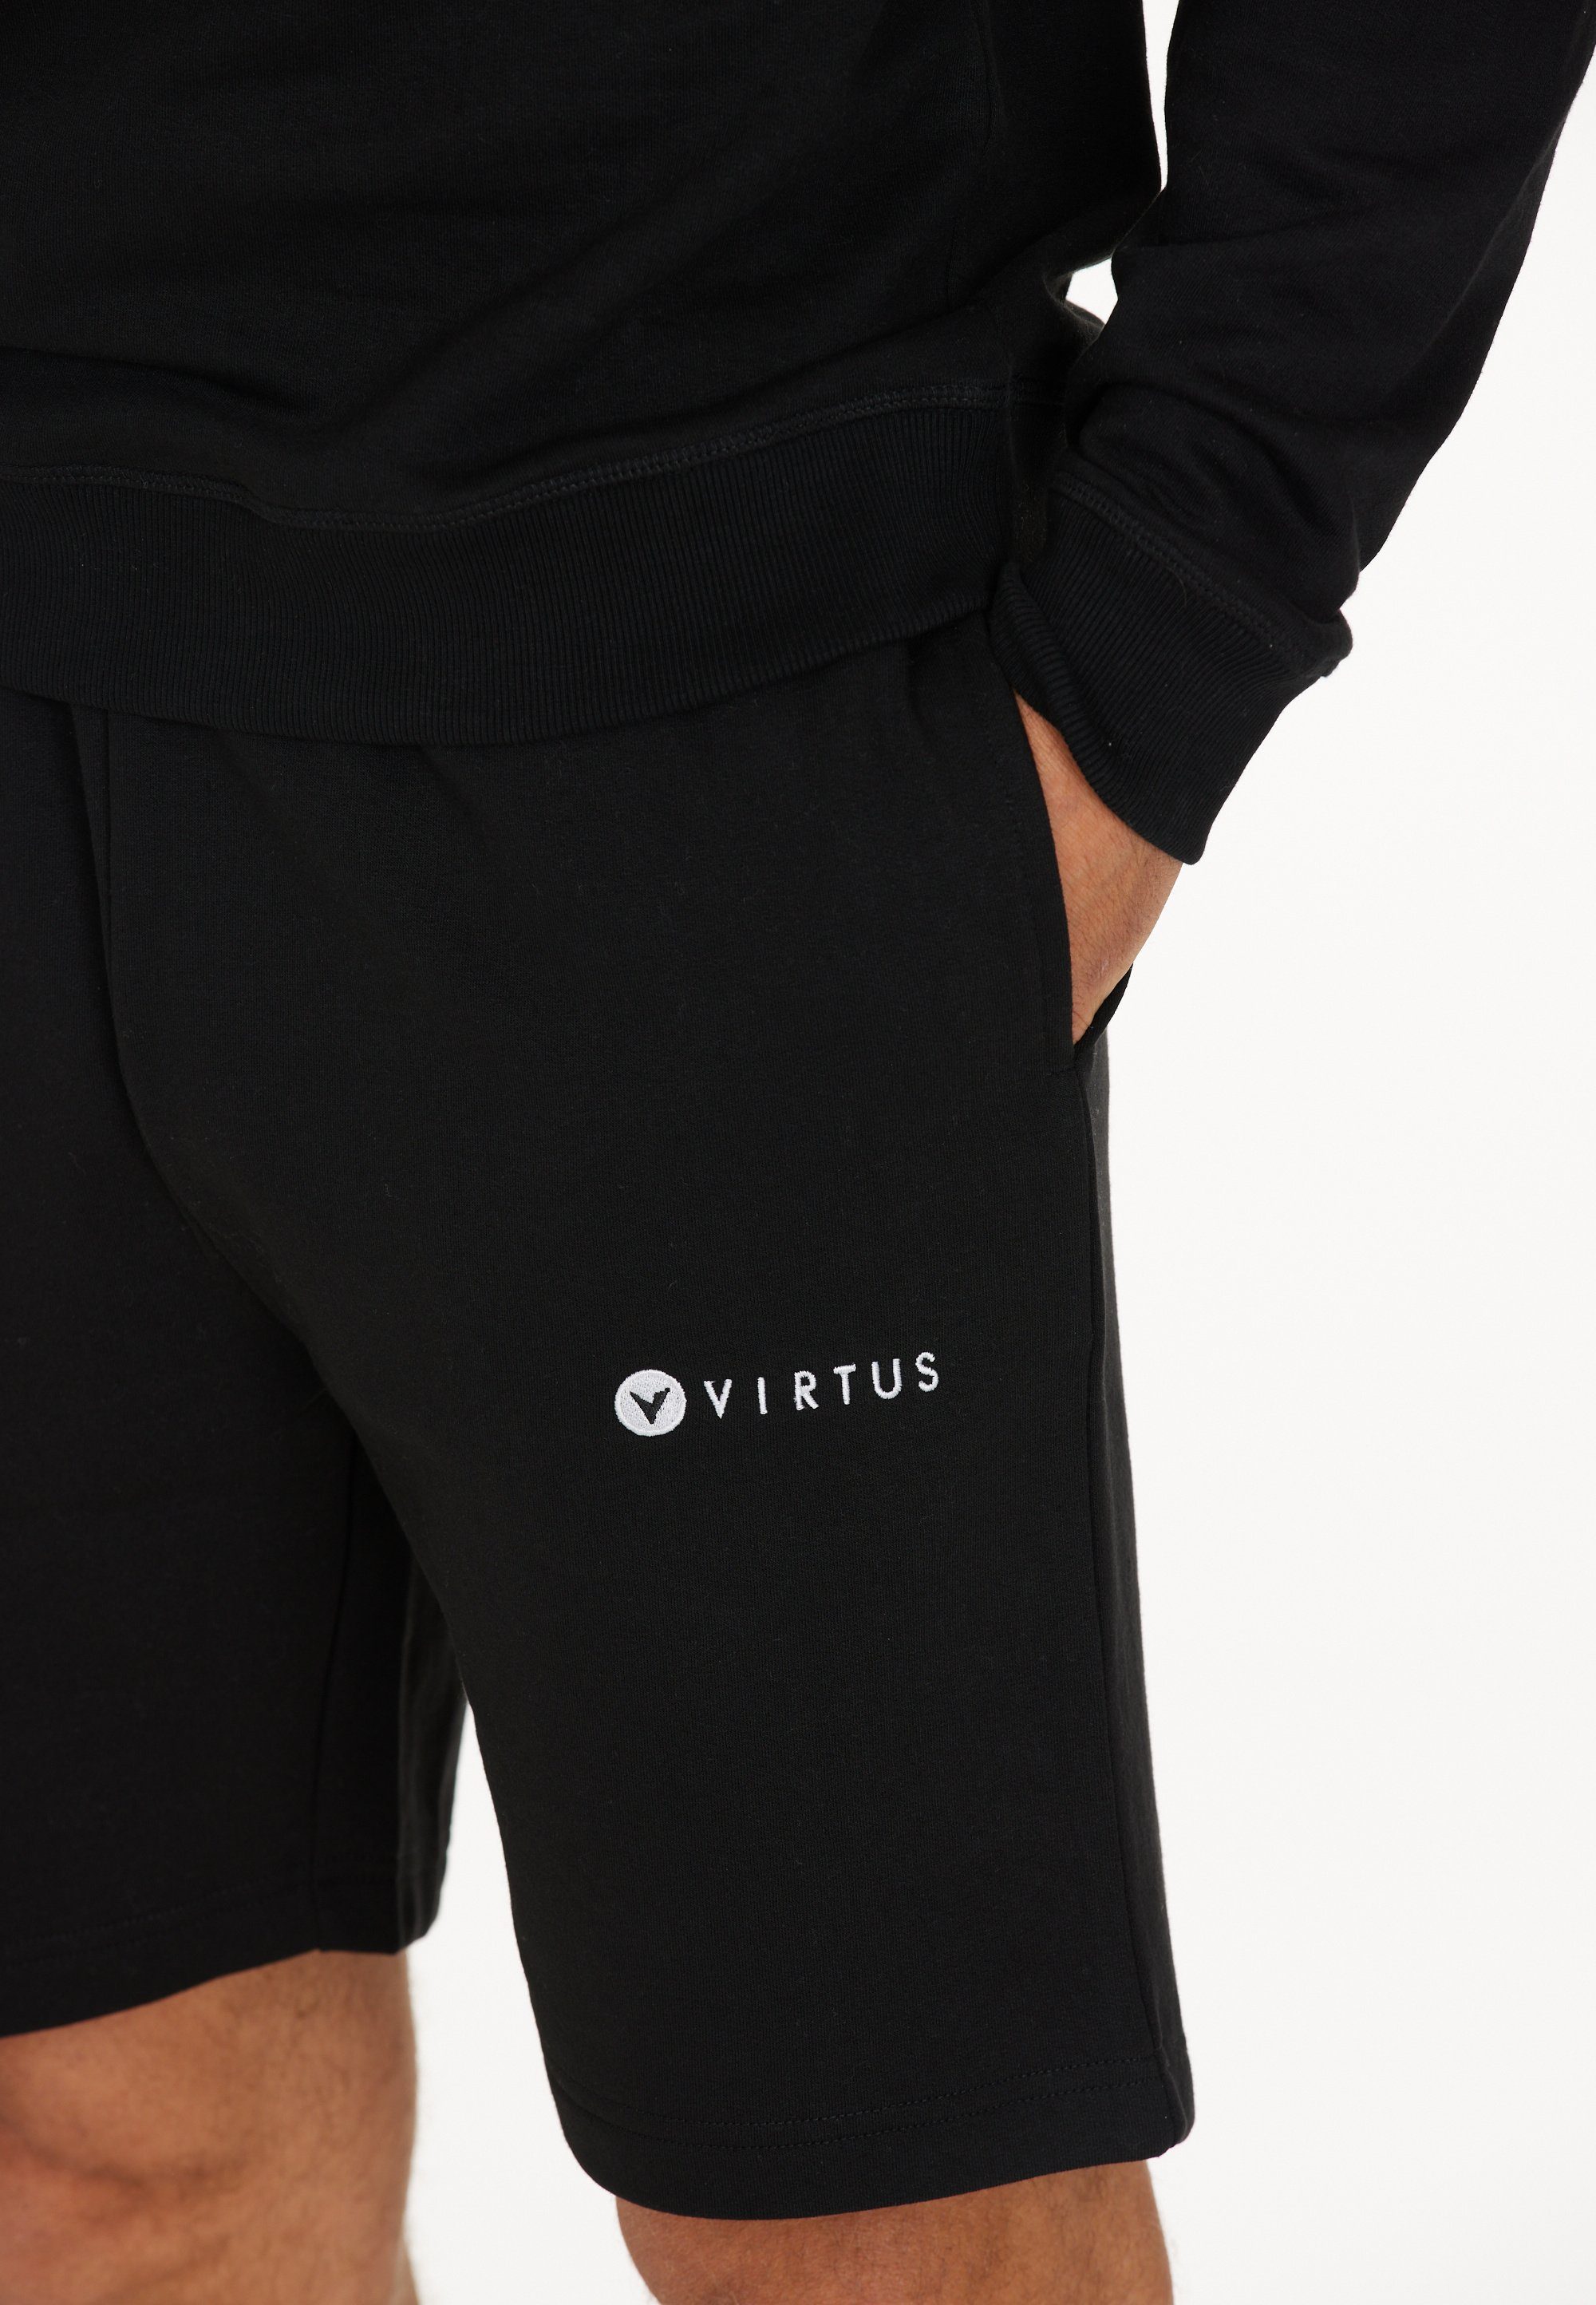 Virtus Shorts Kritow in sportlichem schwarz Design